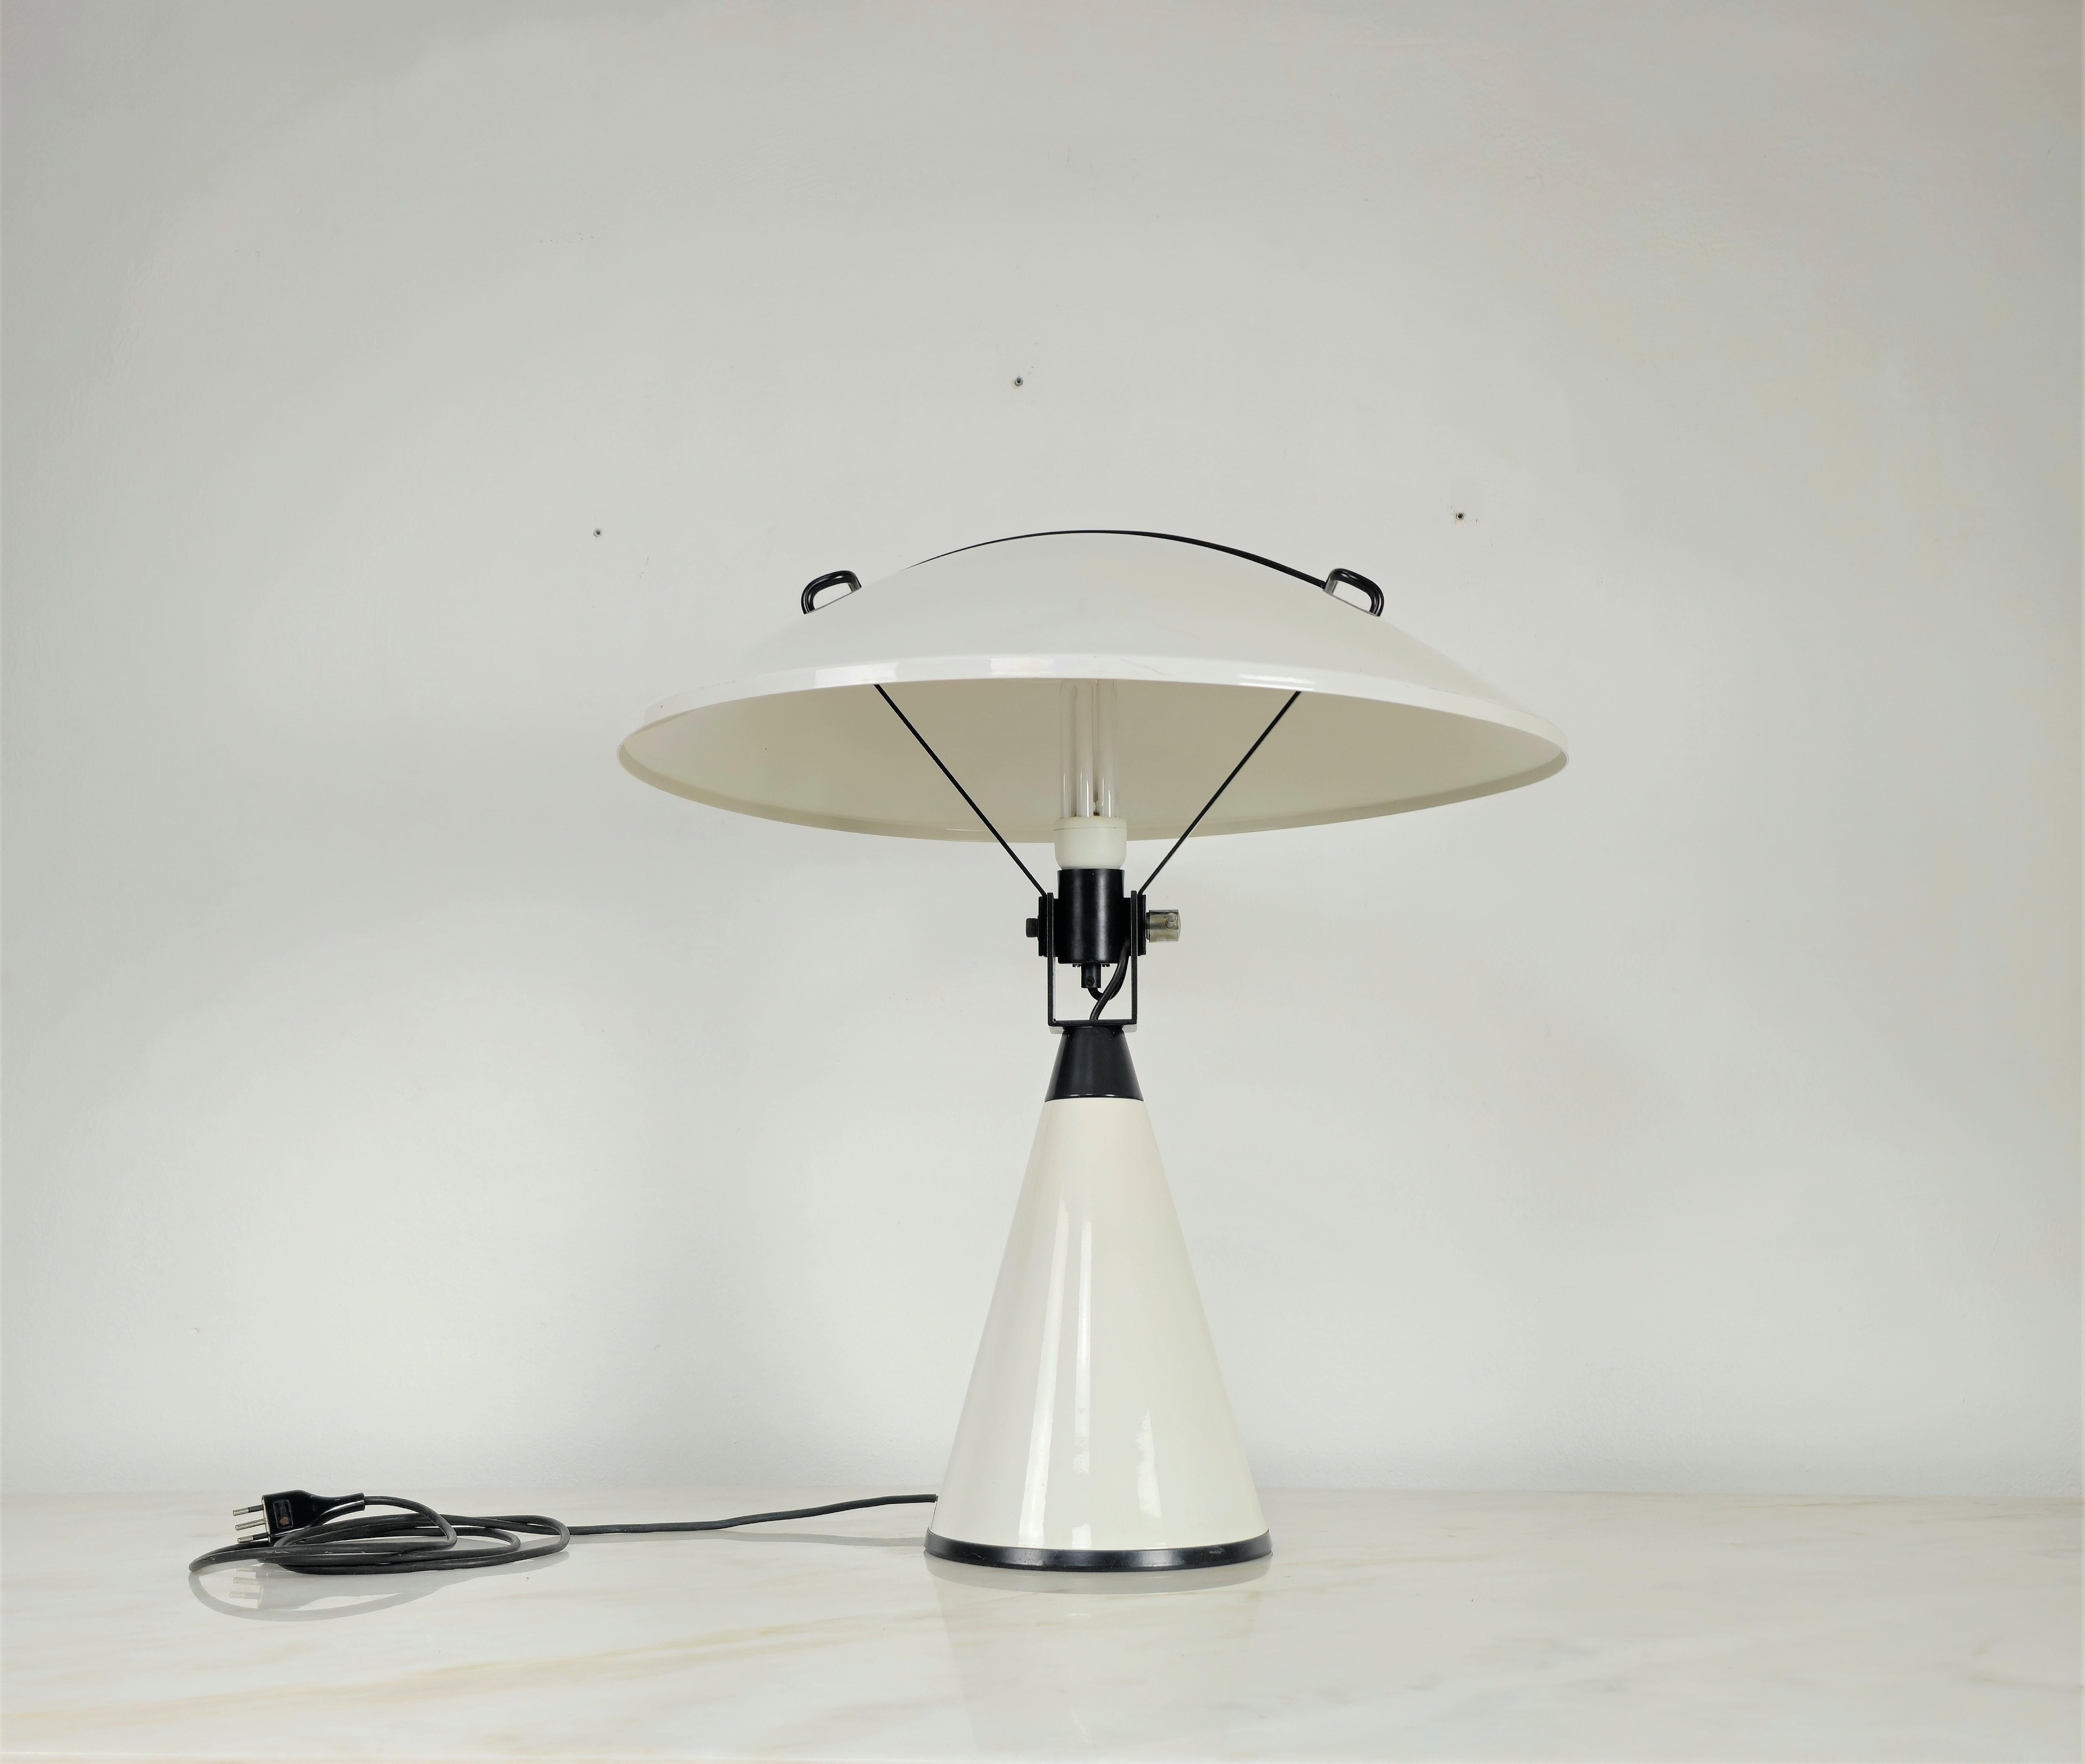 20th Century Table Lamp Elio Martinelli Radar Aluminum Metal Midcentury Italian Design 1970s